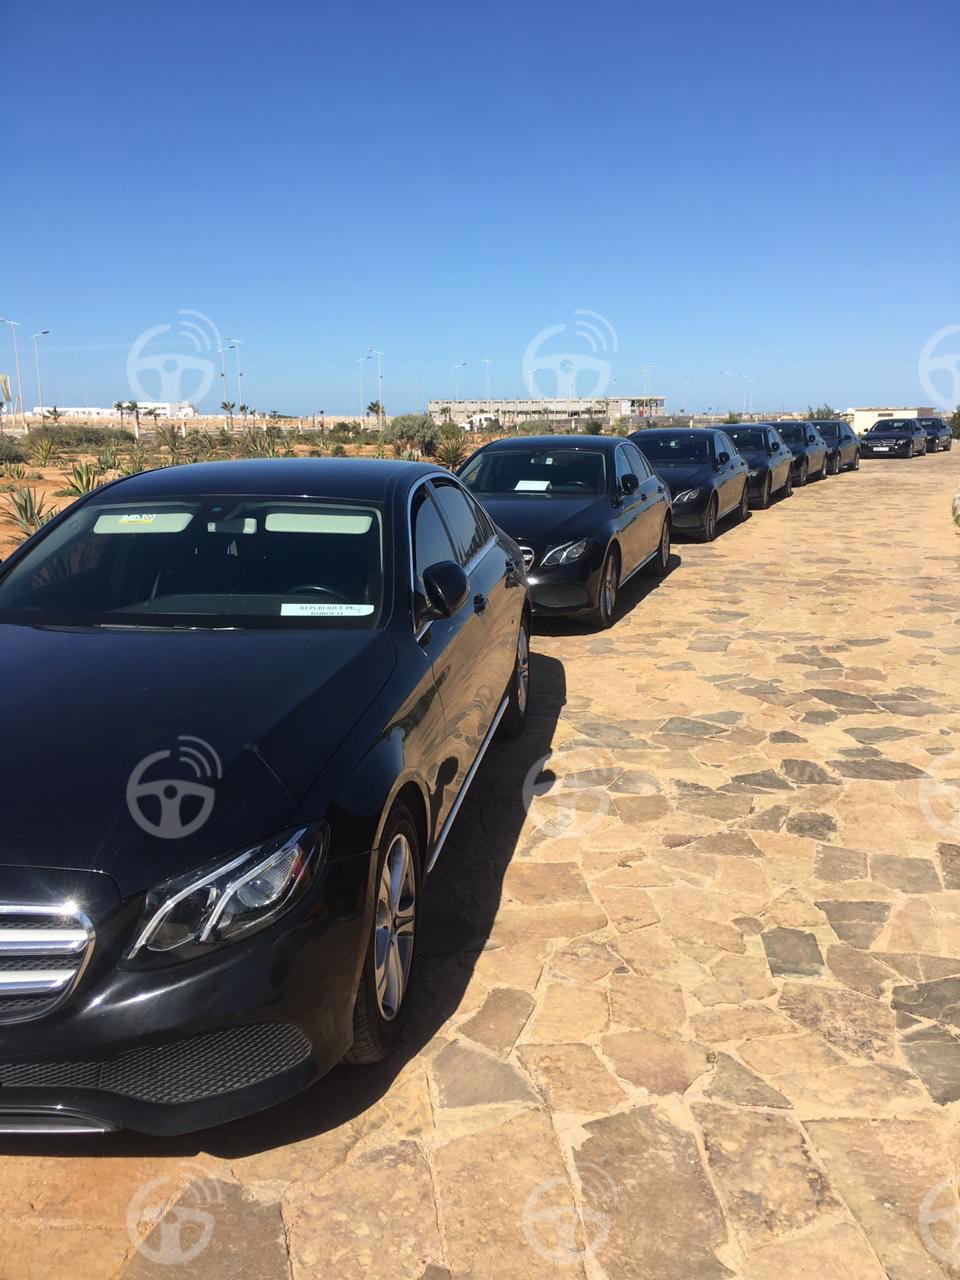 fleet of Mercedes E class for event in marrakech 2022